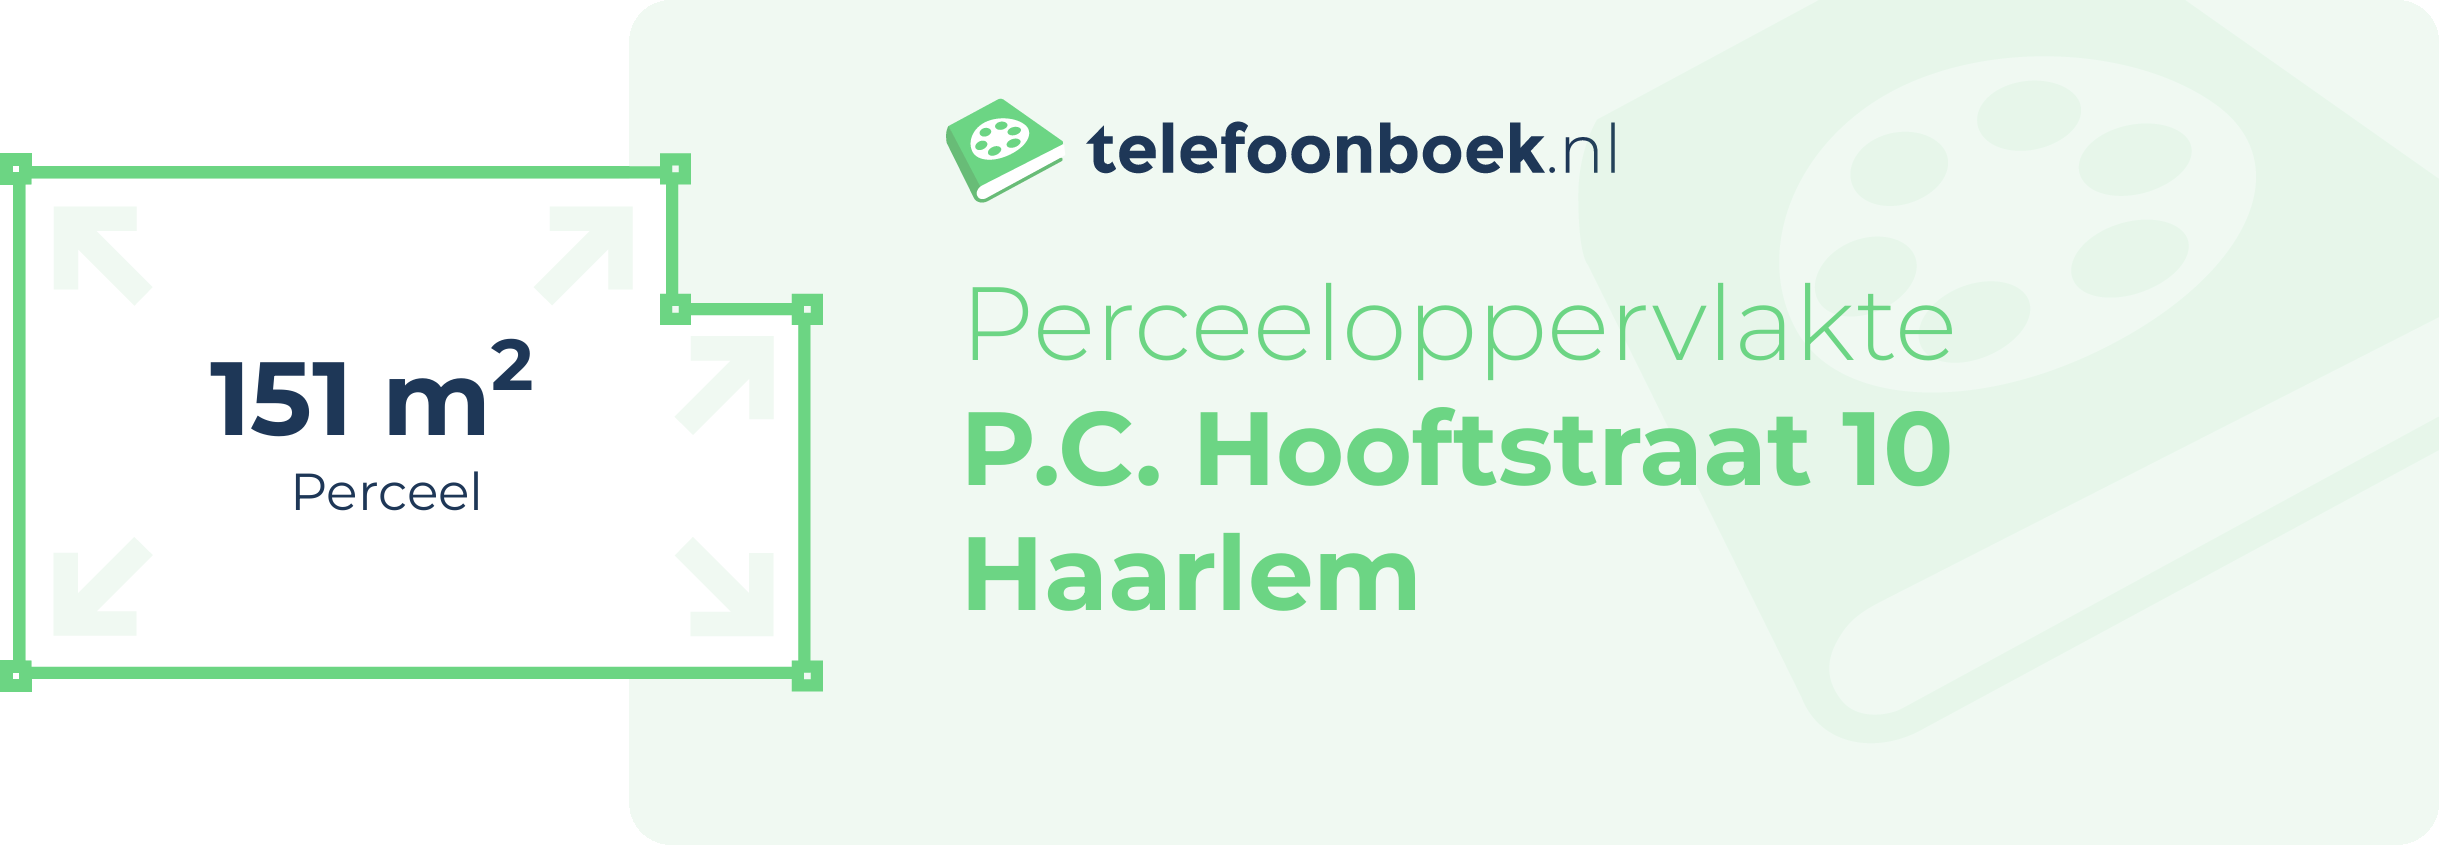 Perceeloppervlakte P.C. Hooftstraat 10 Haarlem